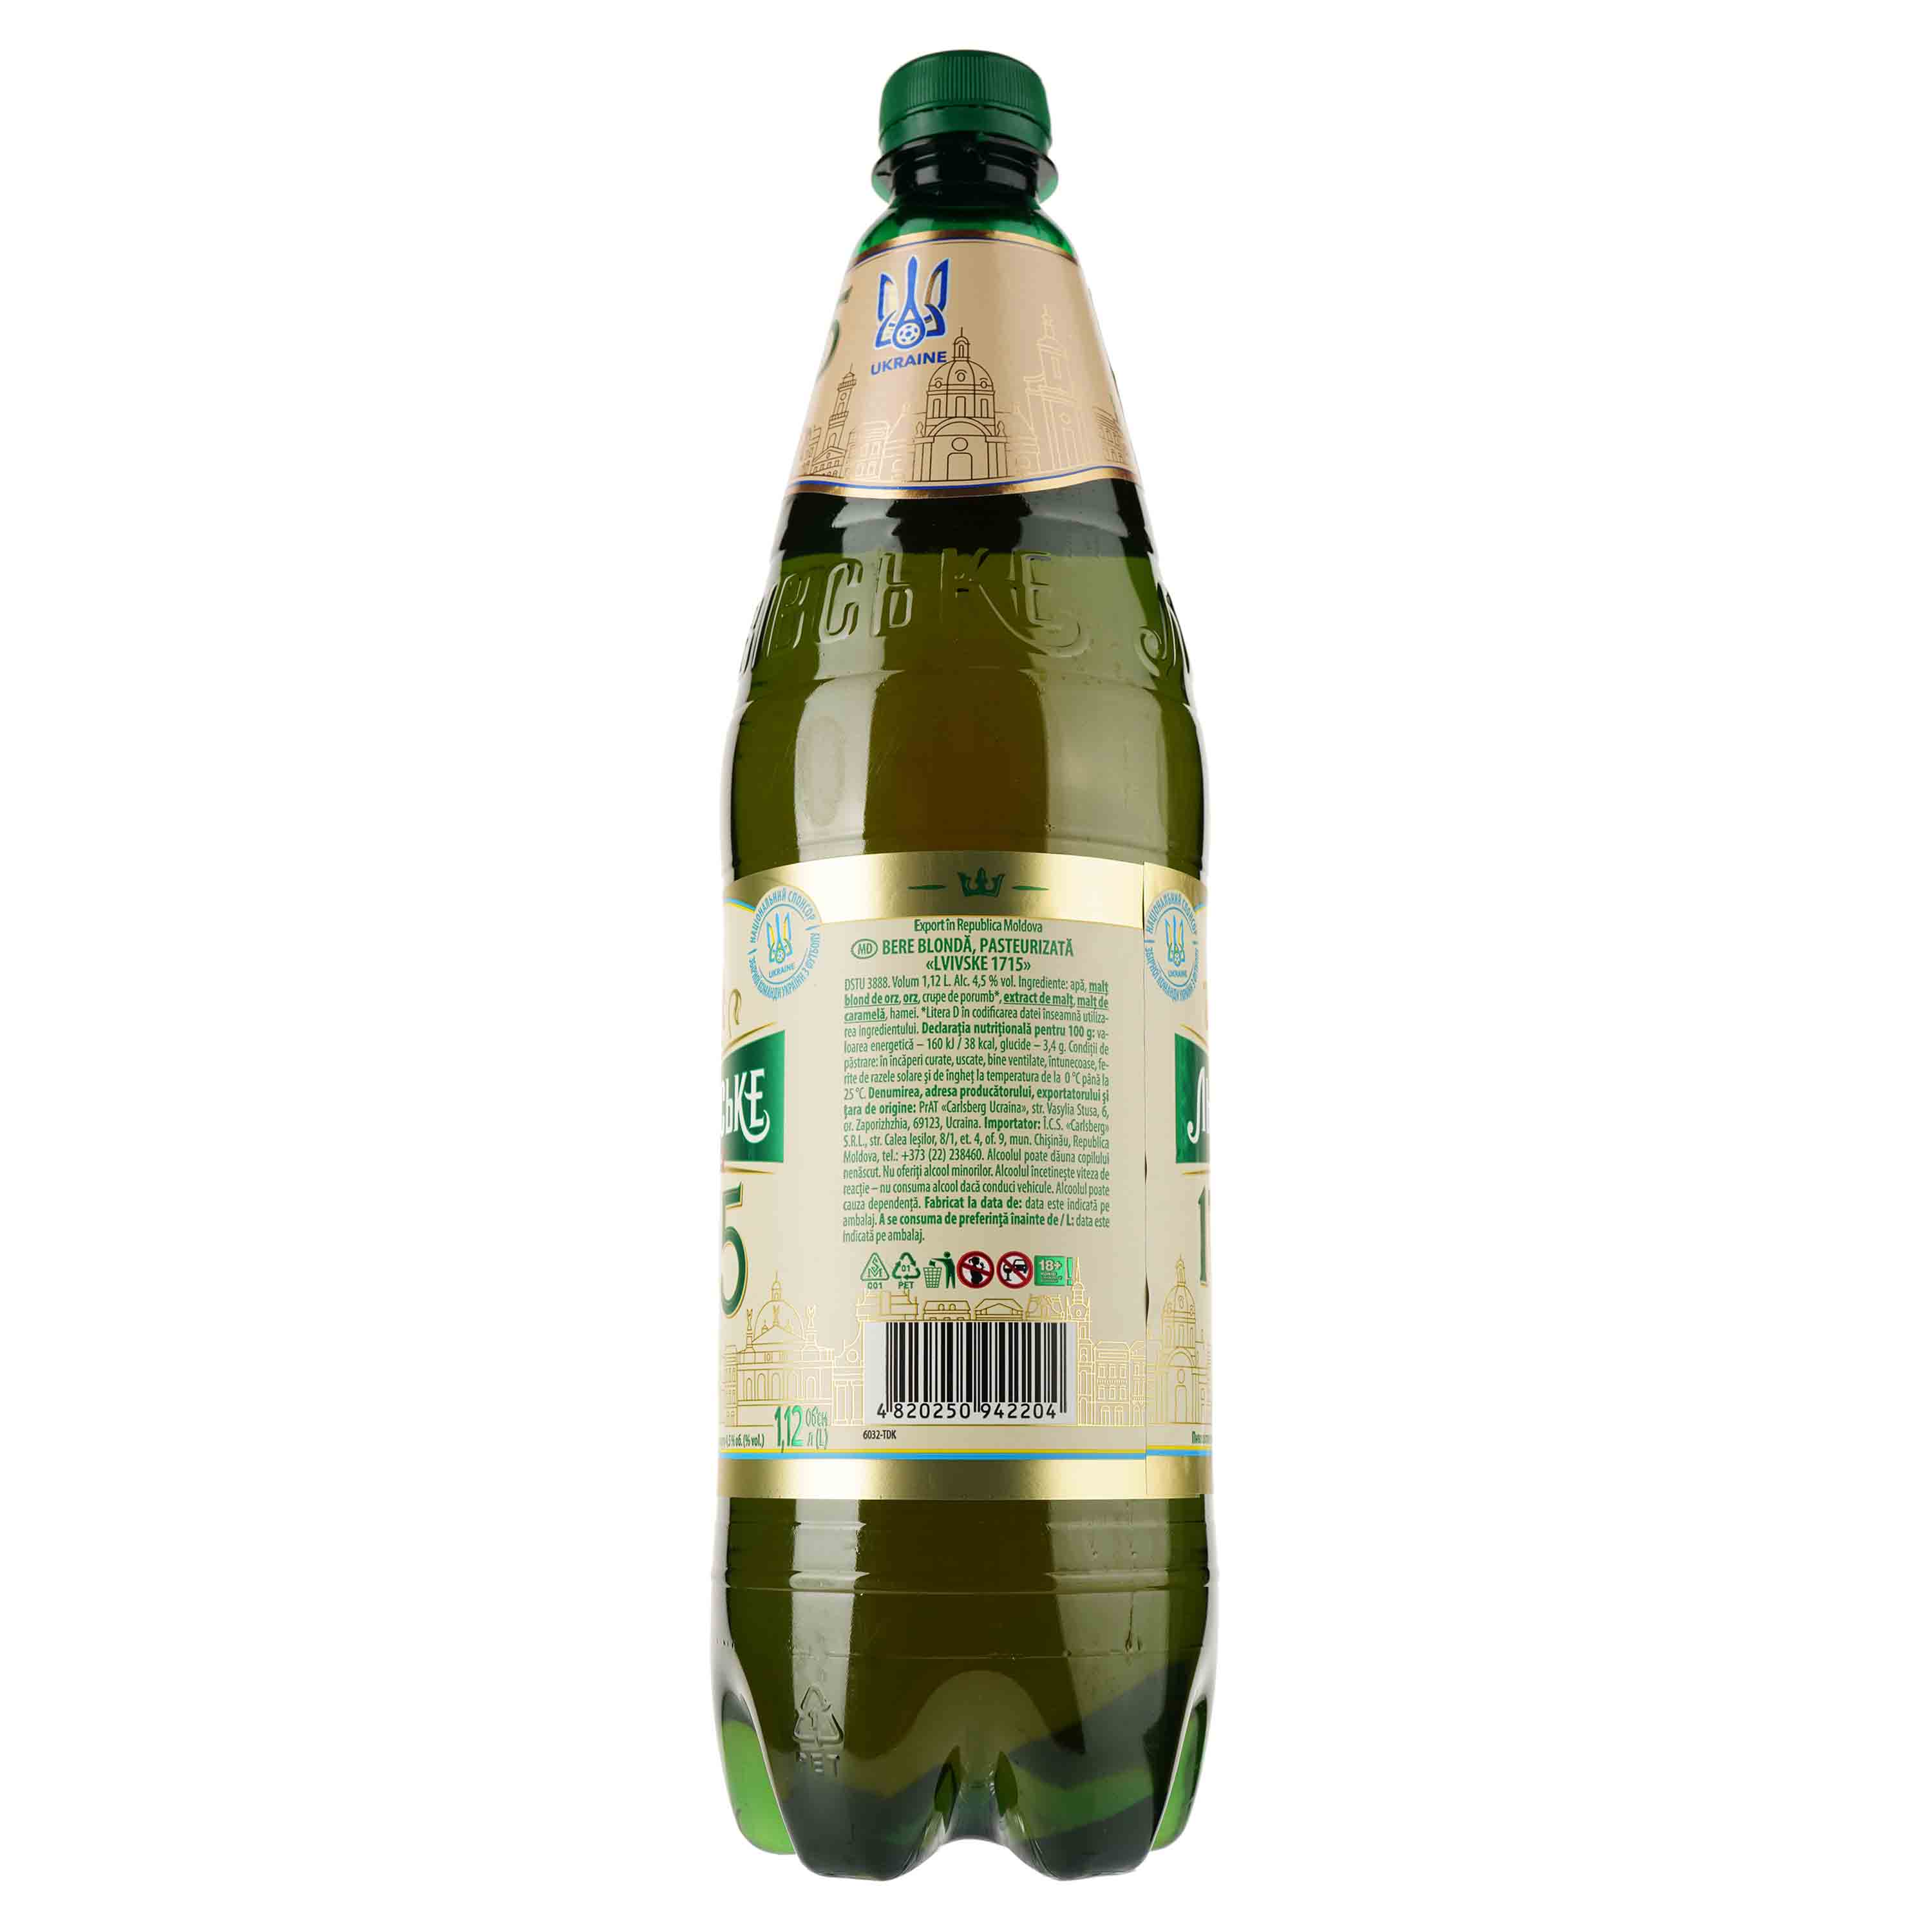 Пиво Львівське 1715, светлое, 4,5%, 1,12 л (921564) - фото 2